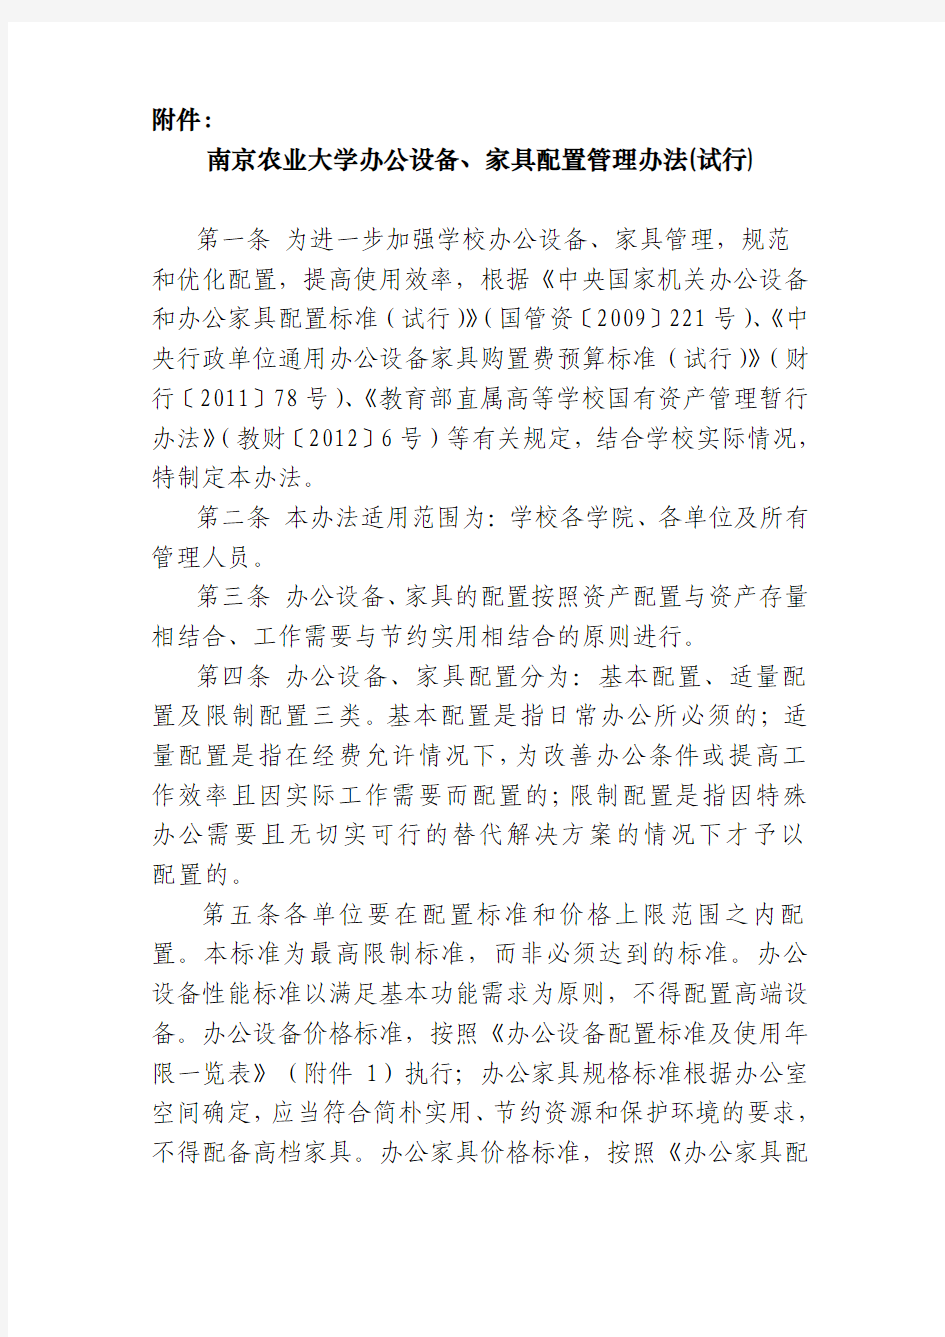 南京农业大学办公设备、家具配置管理办法(试行)